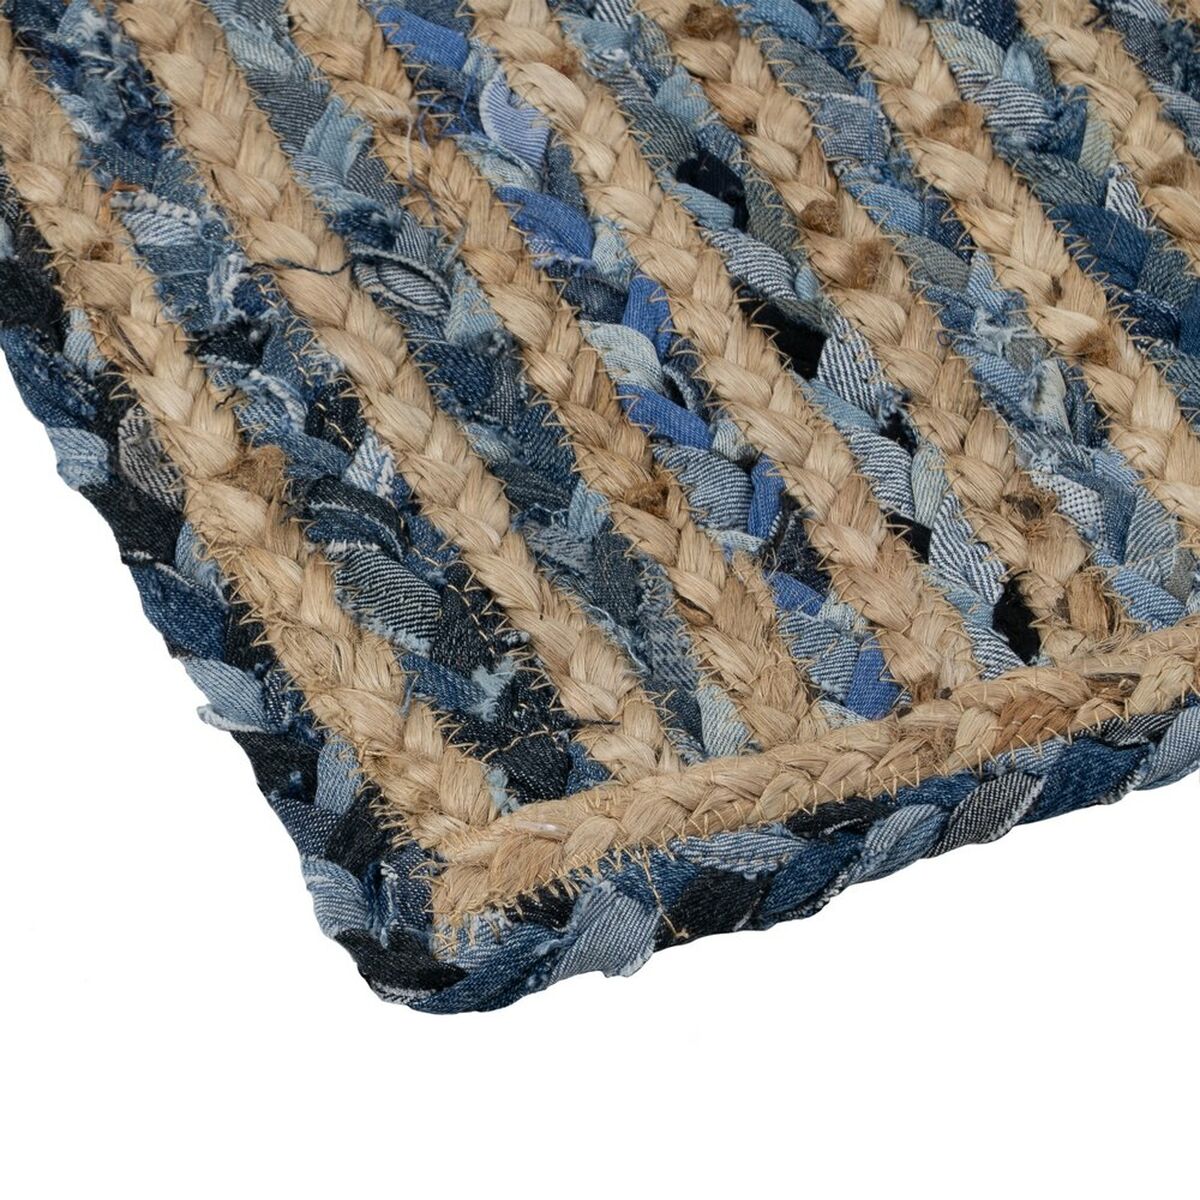 Carpet 290 x 200 cm Natural Blue Cotton Jute